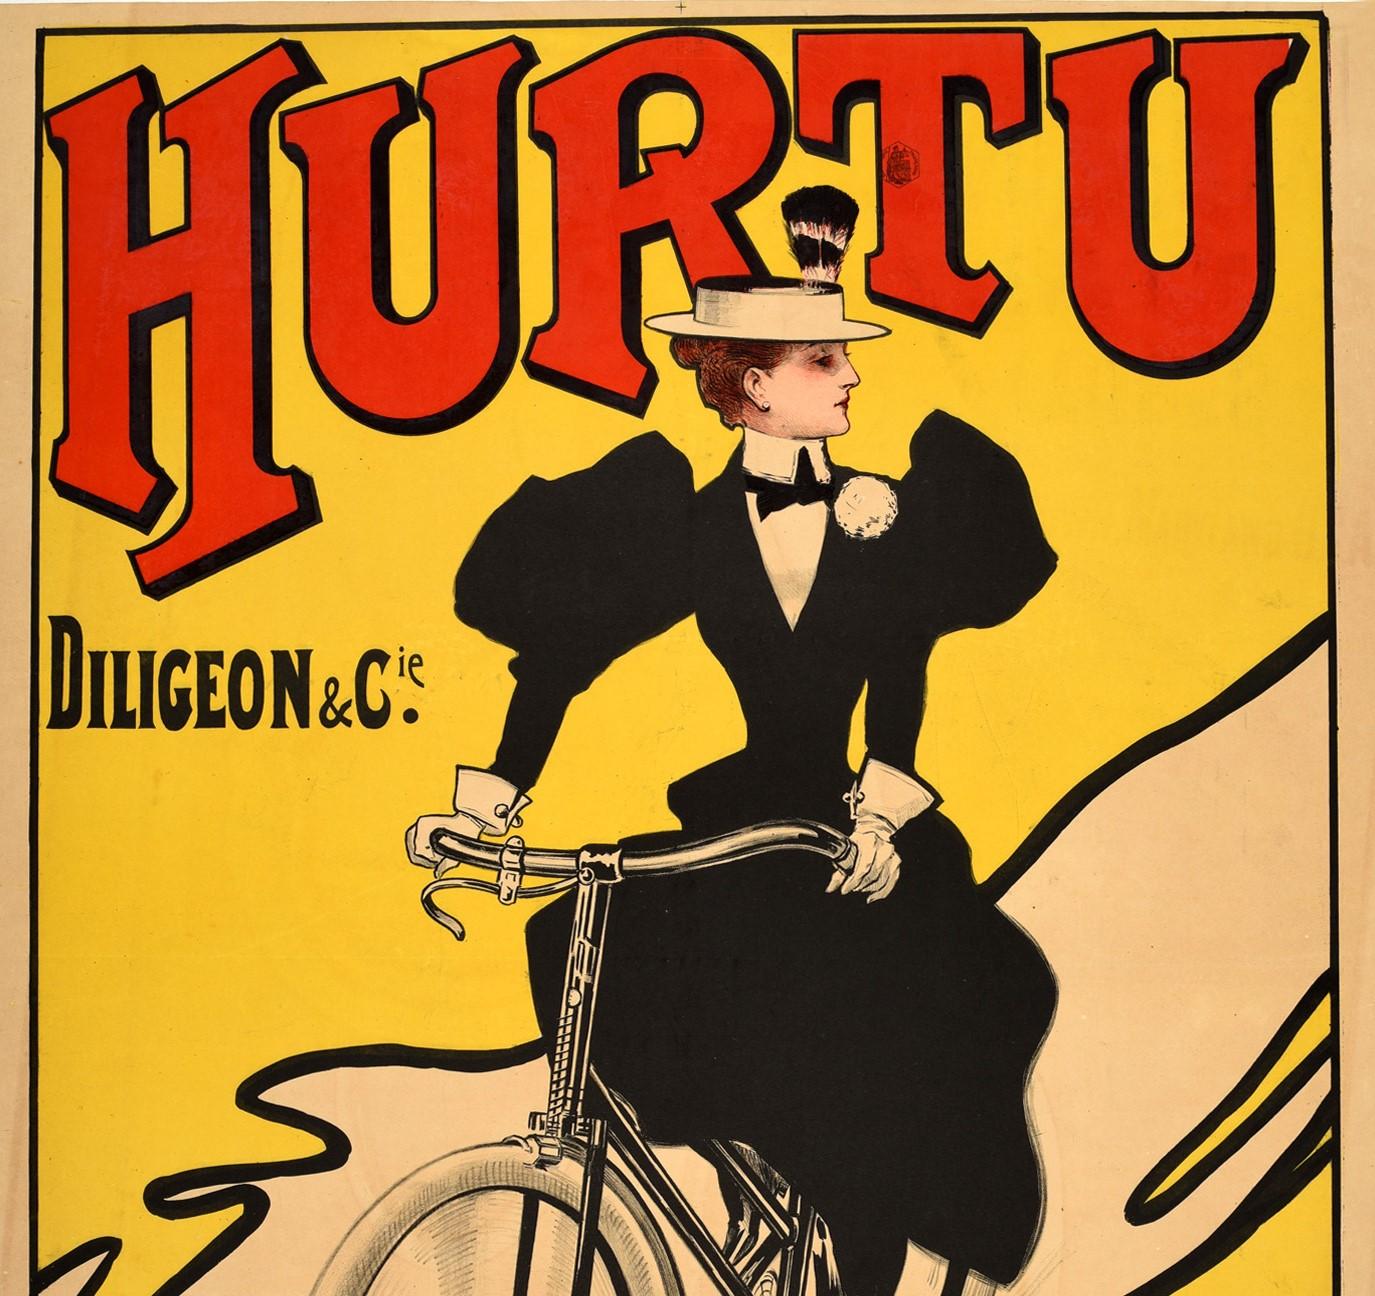 Affiche publicitaire ancienne pour les bicyclettes Hurtu comportant une superbe illustration d'une dame habillée à la mode, portant une robe noire et un chapeau à plumes, faisant du vélo sur un fond jaune sous le lettrage stylisé en rouge avec le